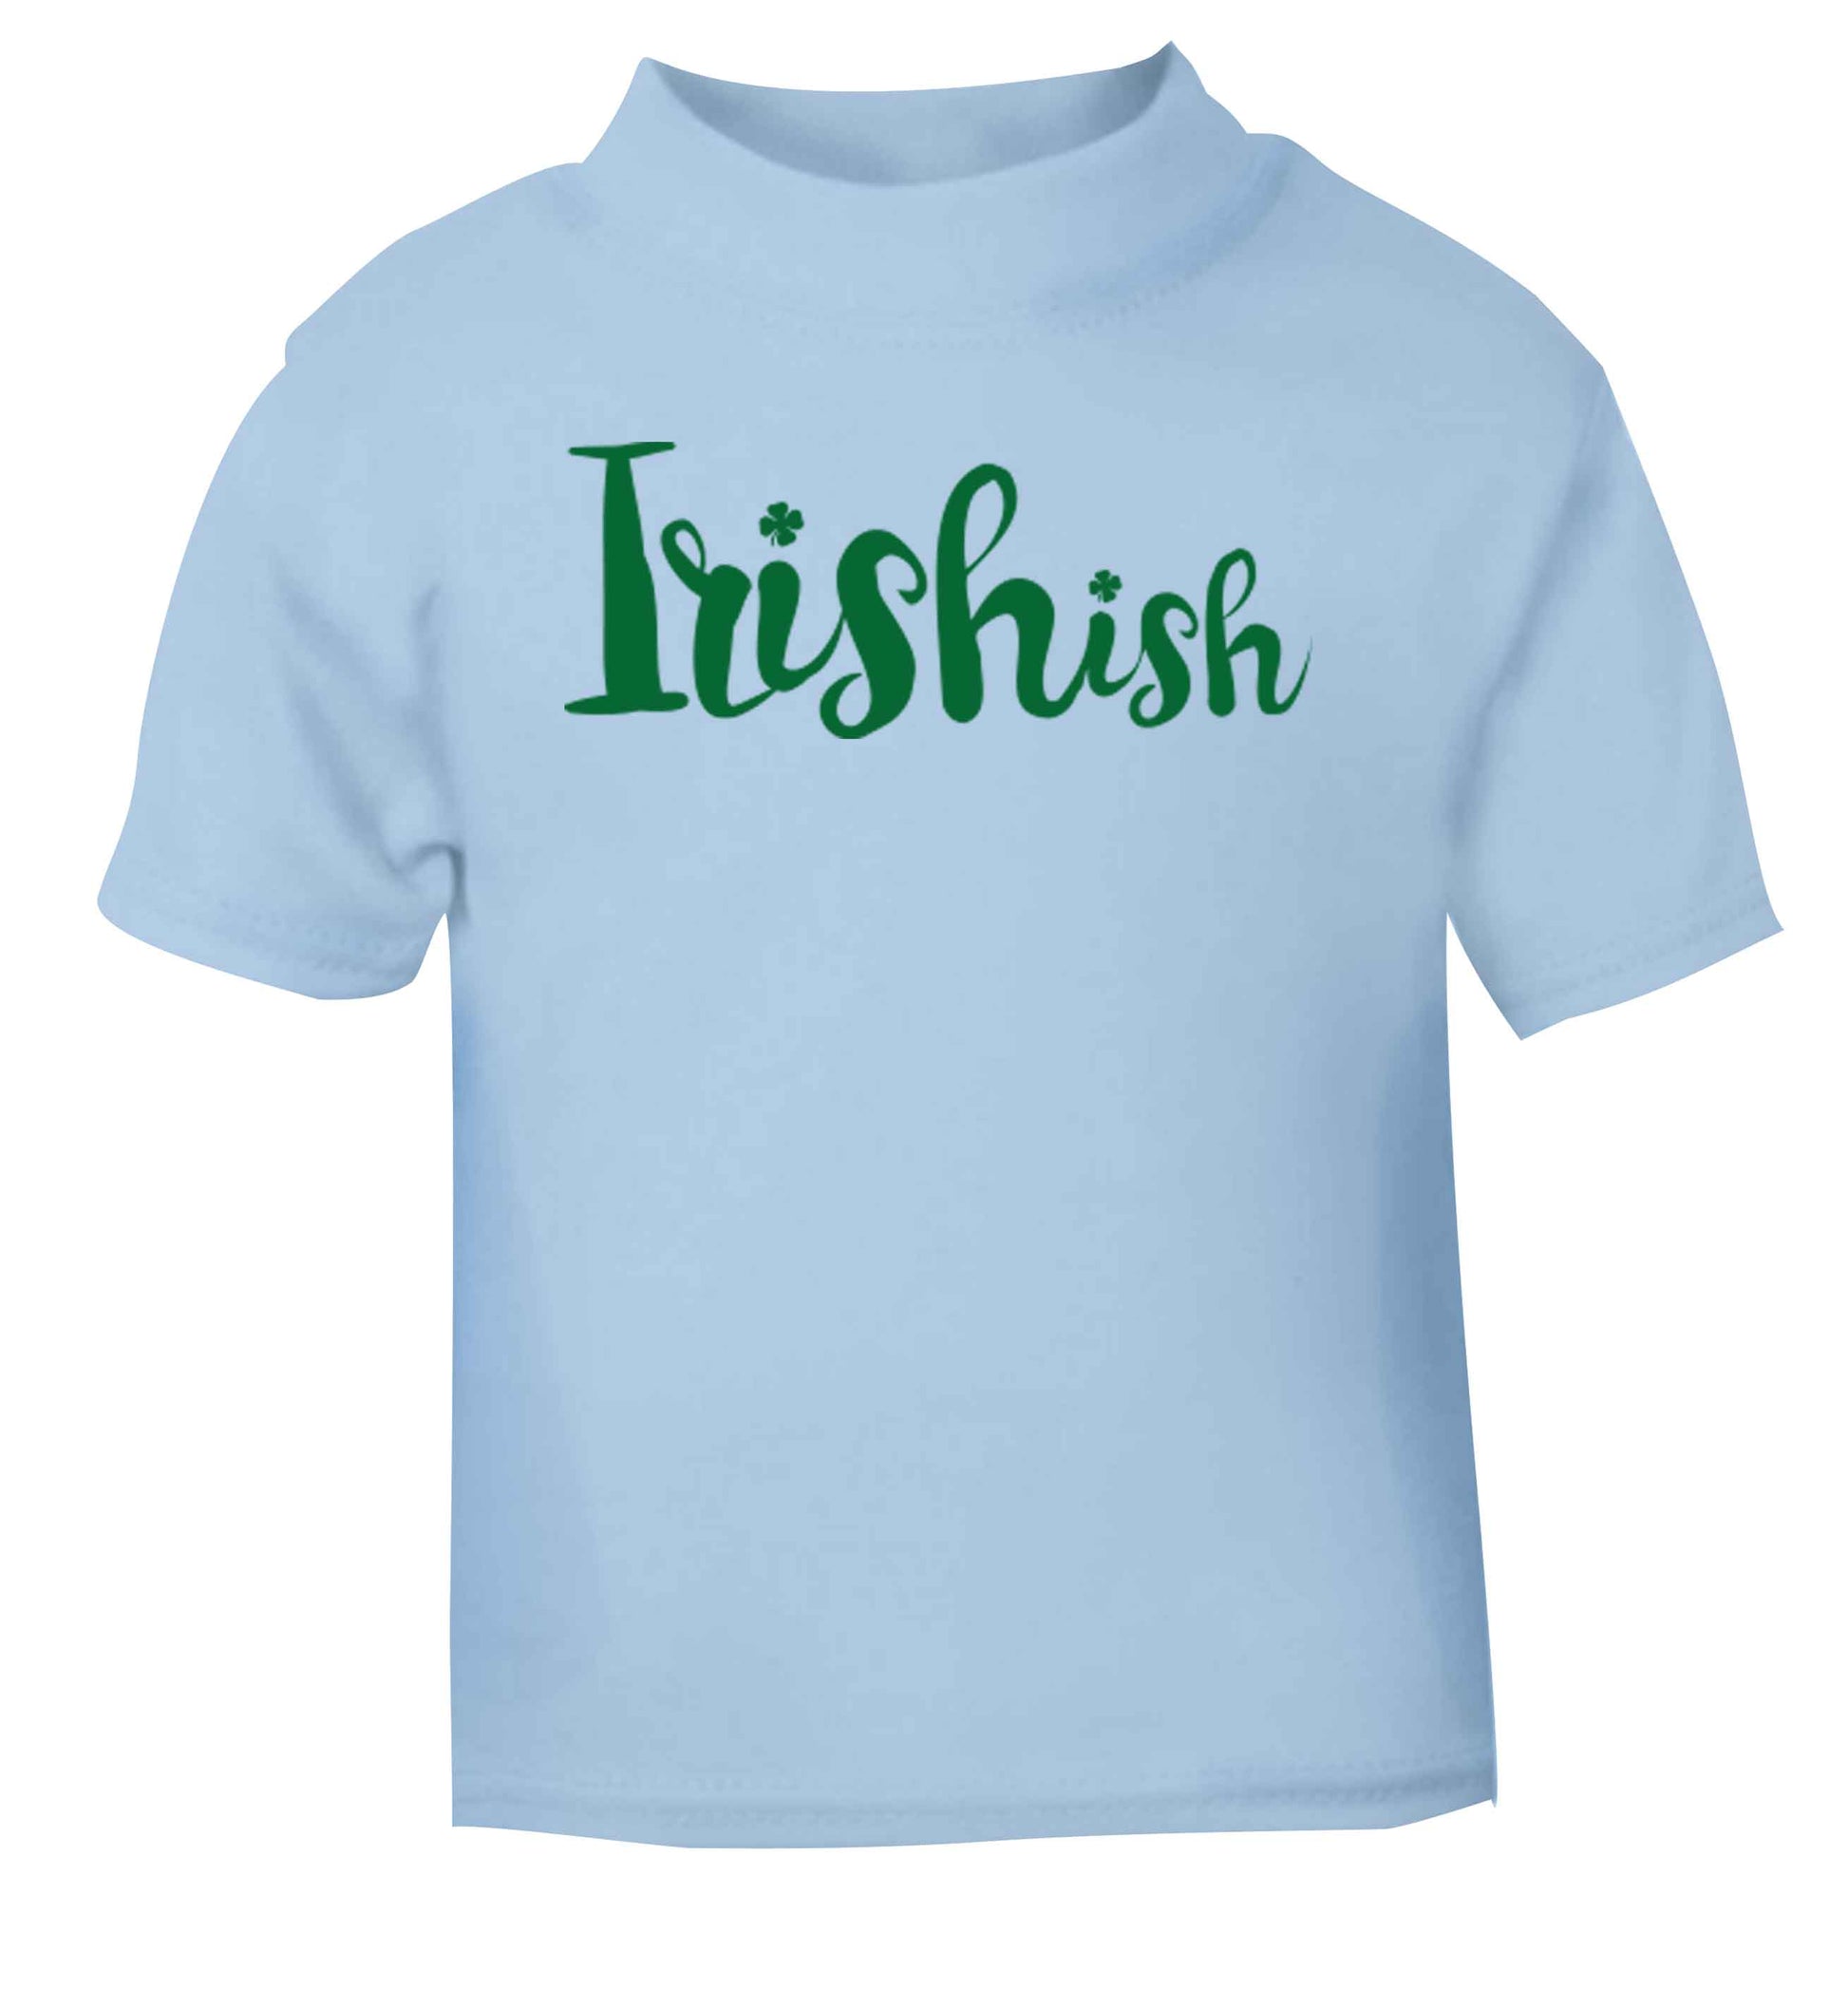 Irishish light blue baby toddler Tshirt 2 Years